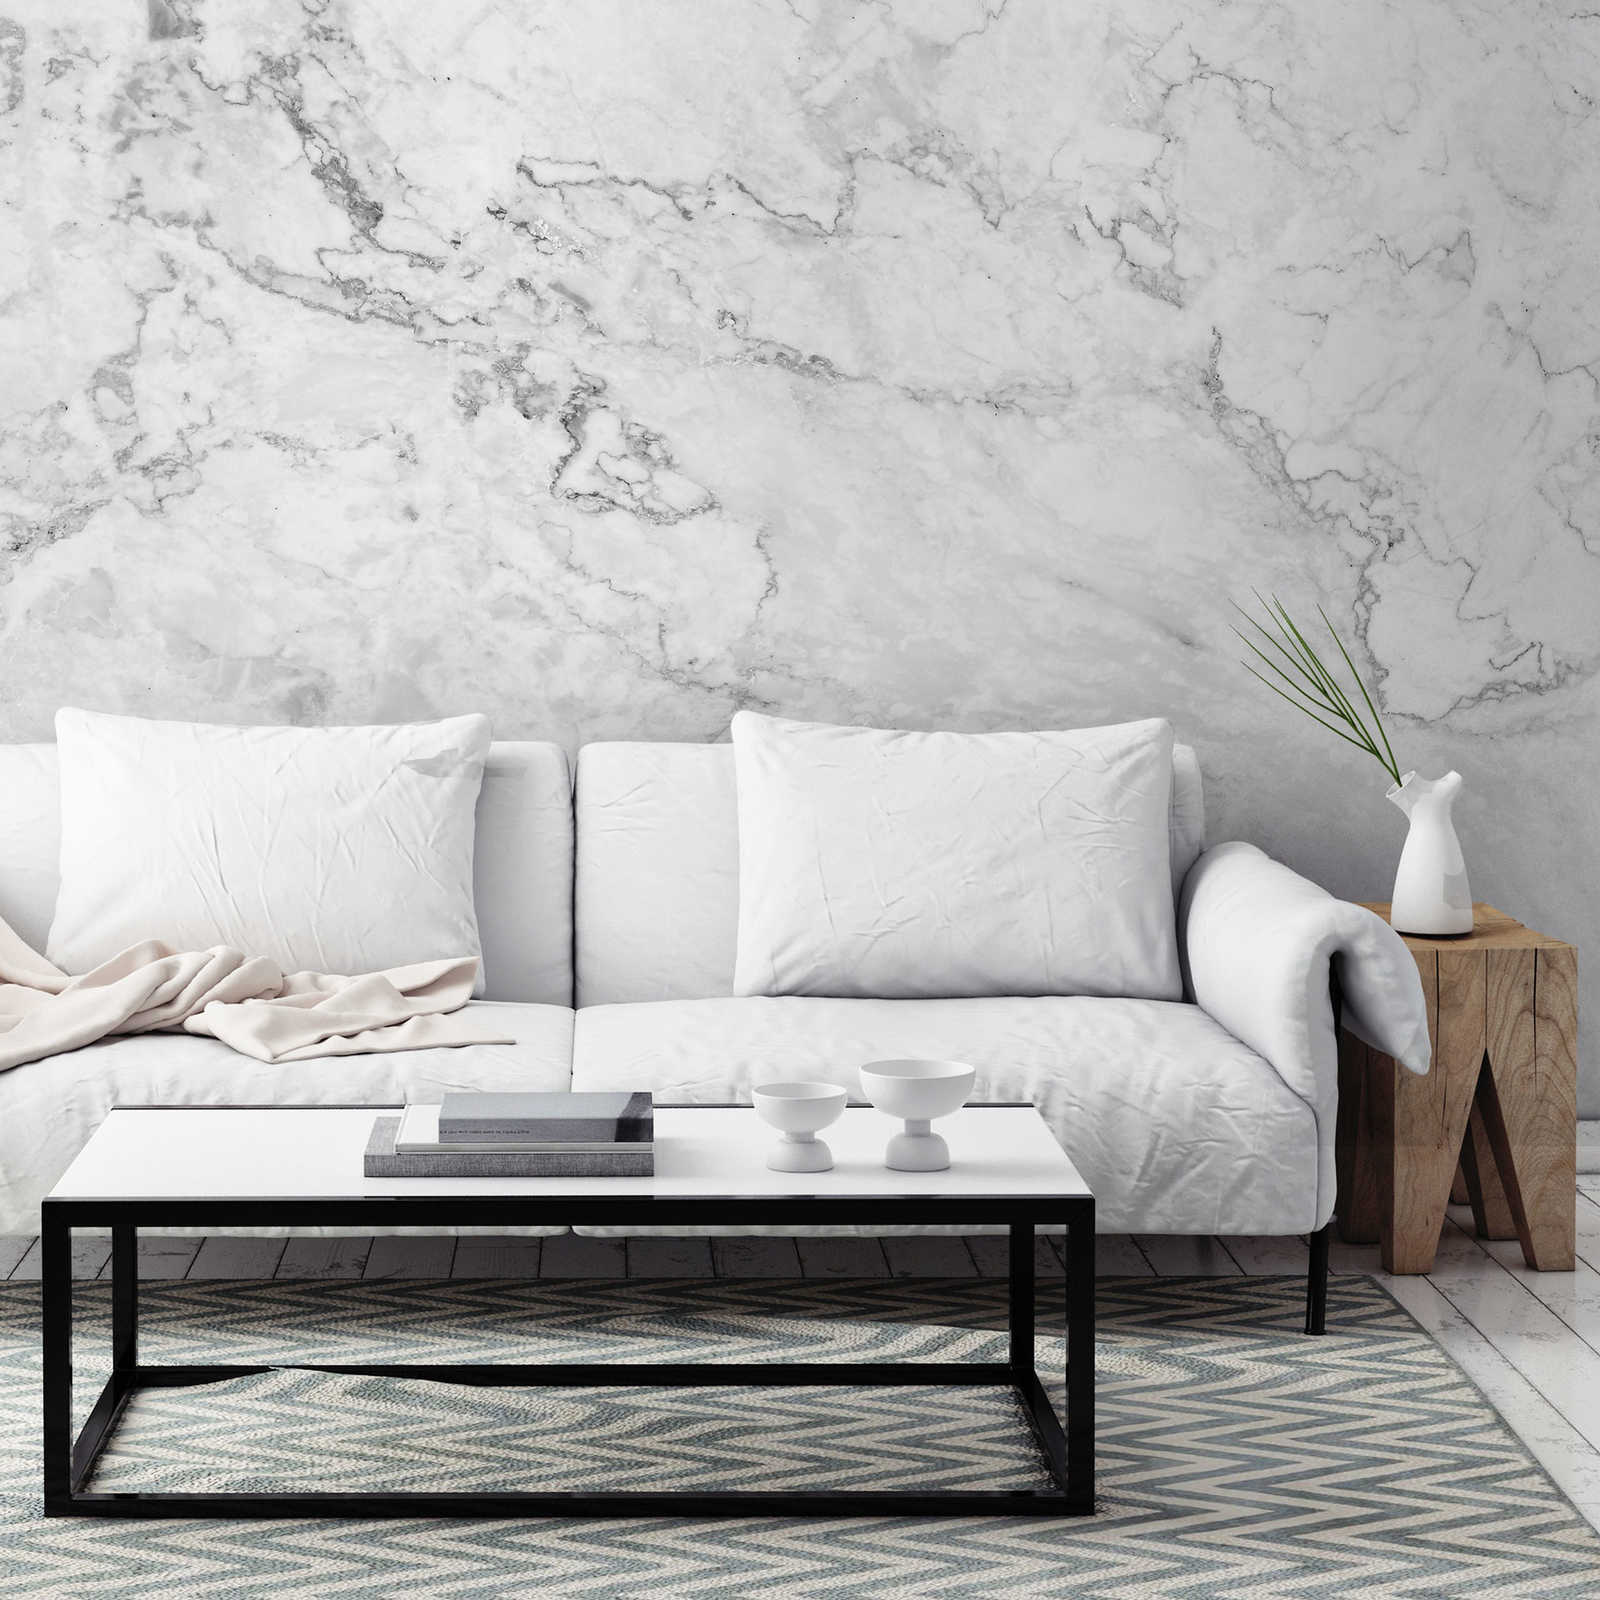             Fotomurali in marmo bianco con accenti grigi
        